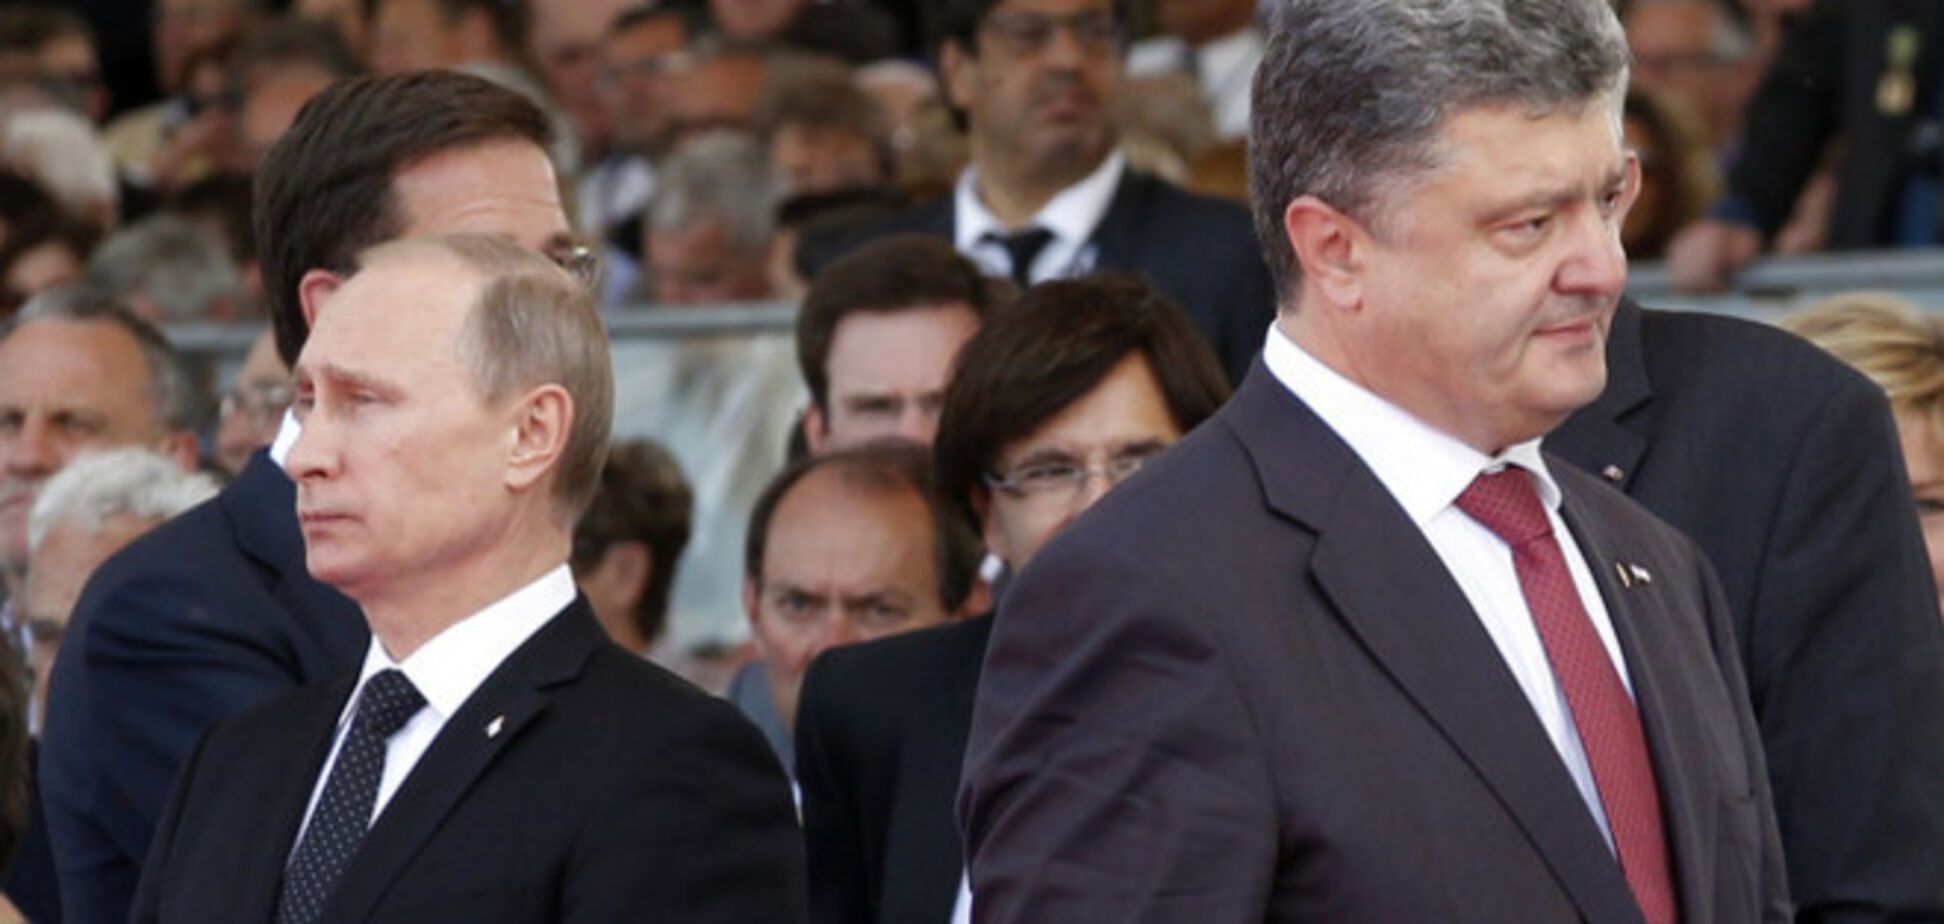 Фесенко: під час зустрічі Порошенко і Путін про мир говорити не будуть